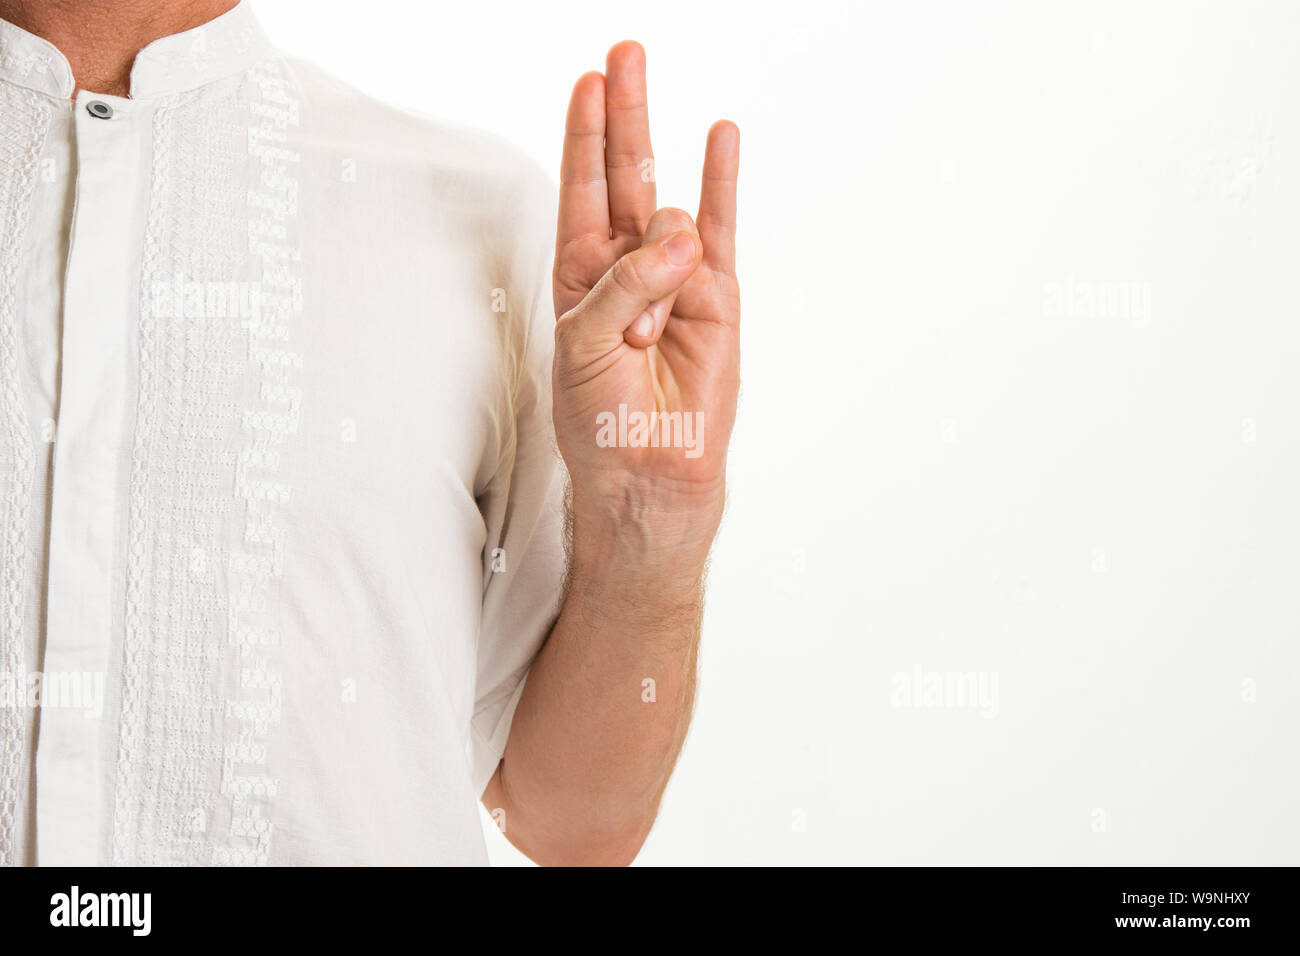 L'homme d'effectuer divers gestes de yoga appelé 'mudras' - Alternative Santé et Bien-être concept image avec copie espace pour le texte. Banque D'Images